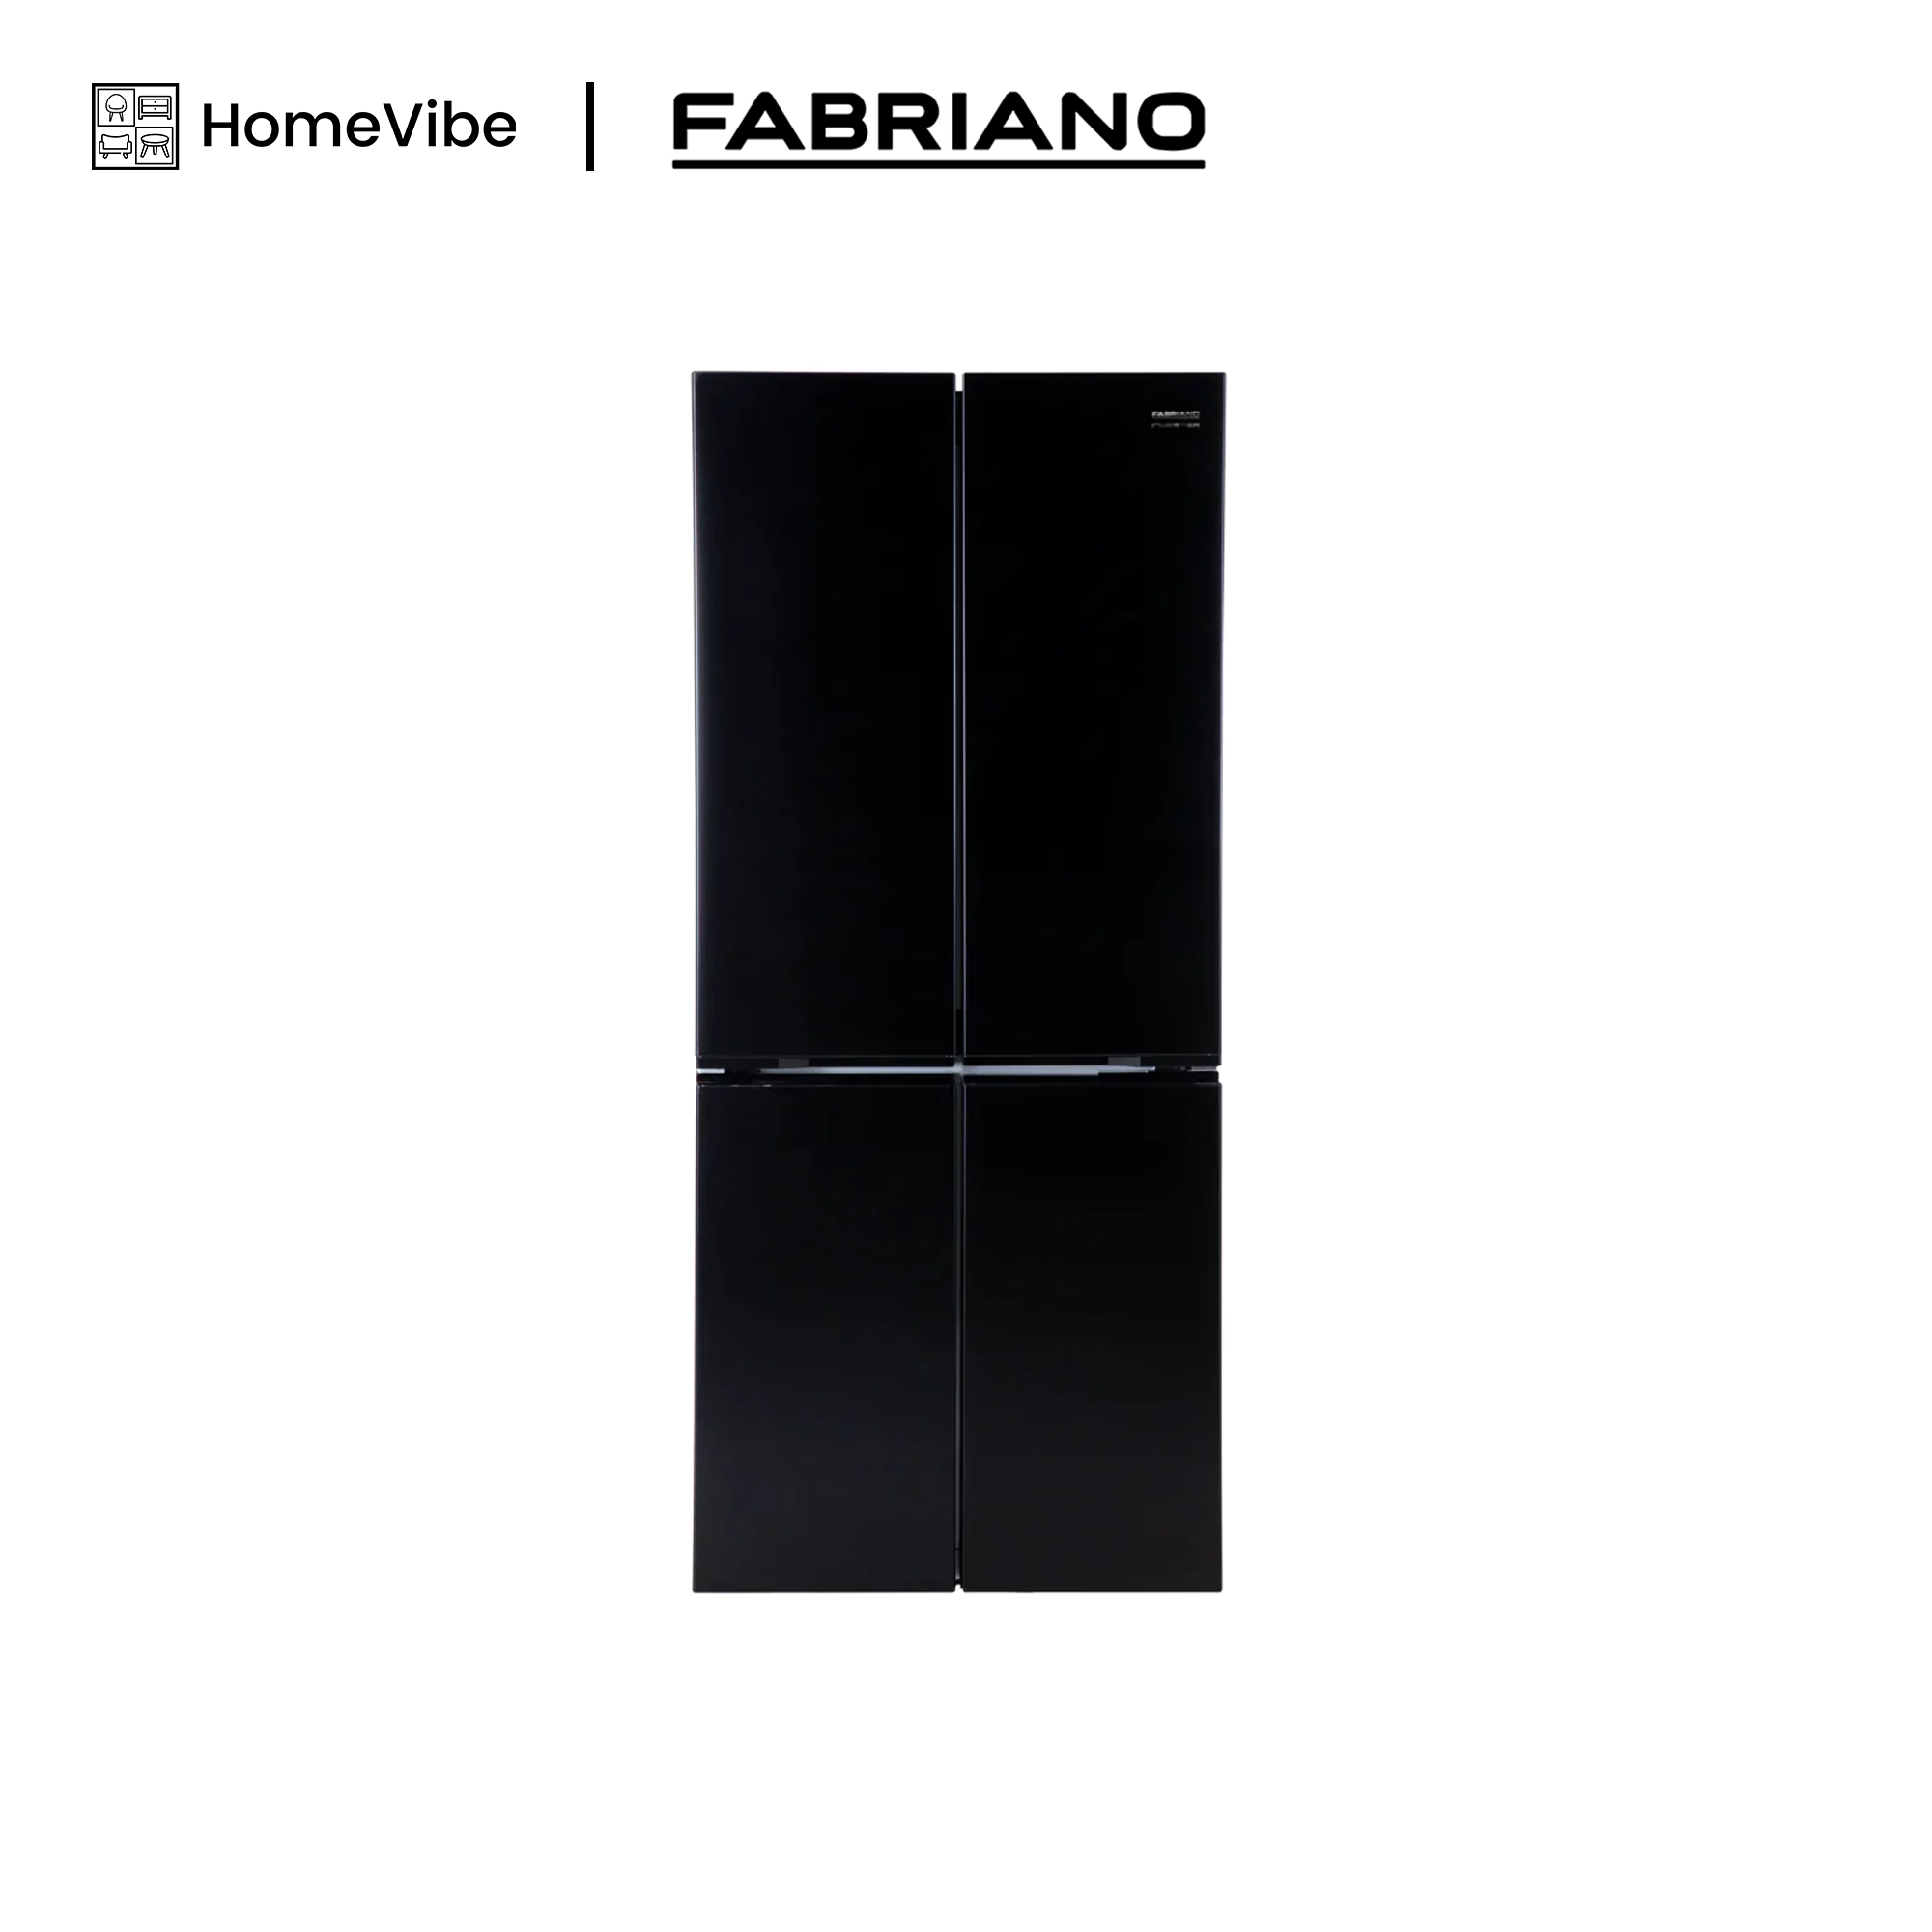 Fabriano 17cuft Multi Door (4 Door) FMDG17BL-I